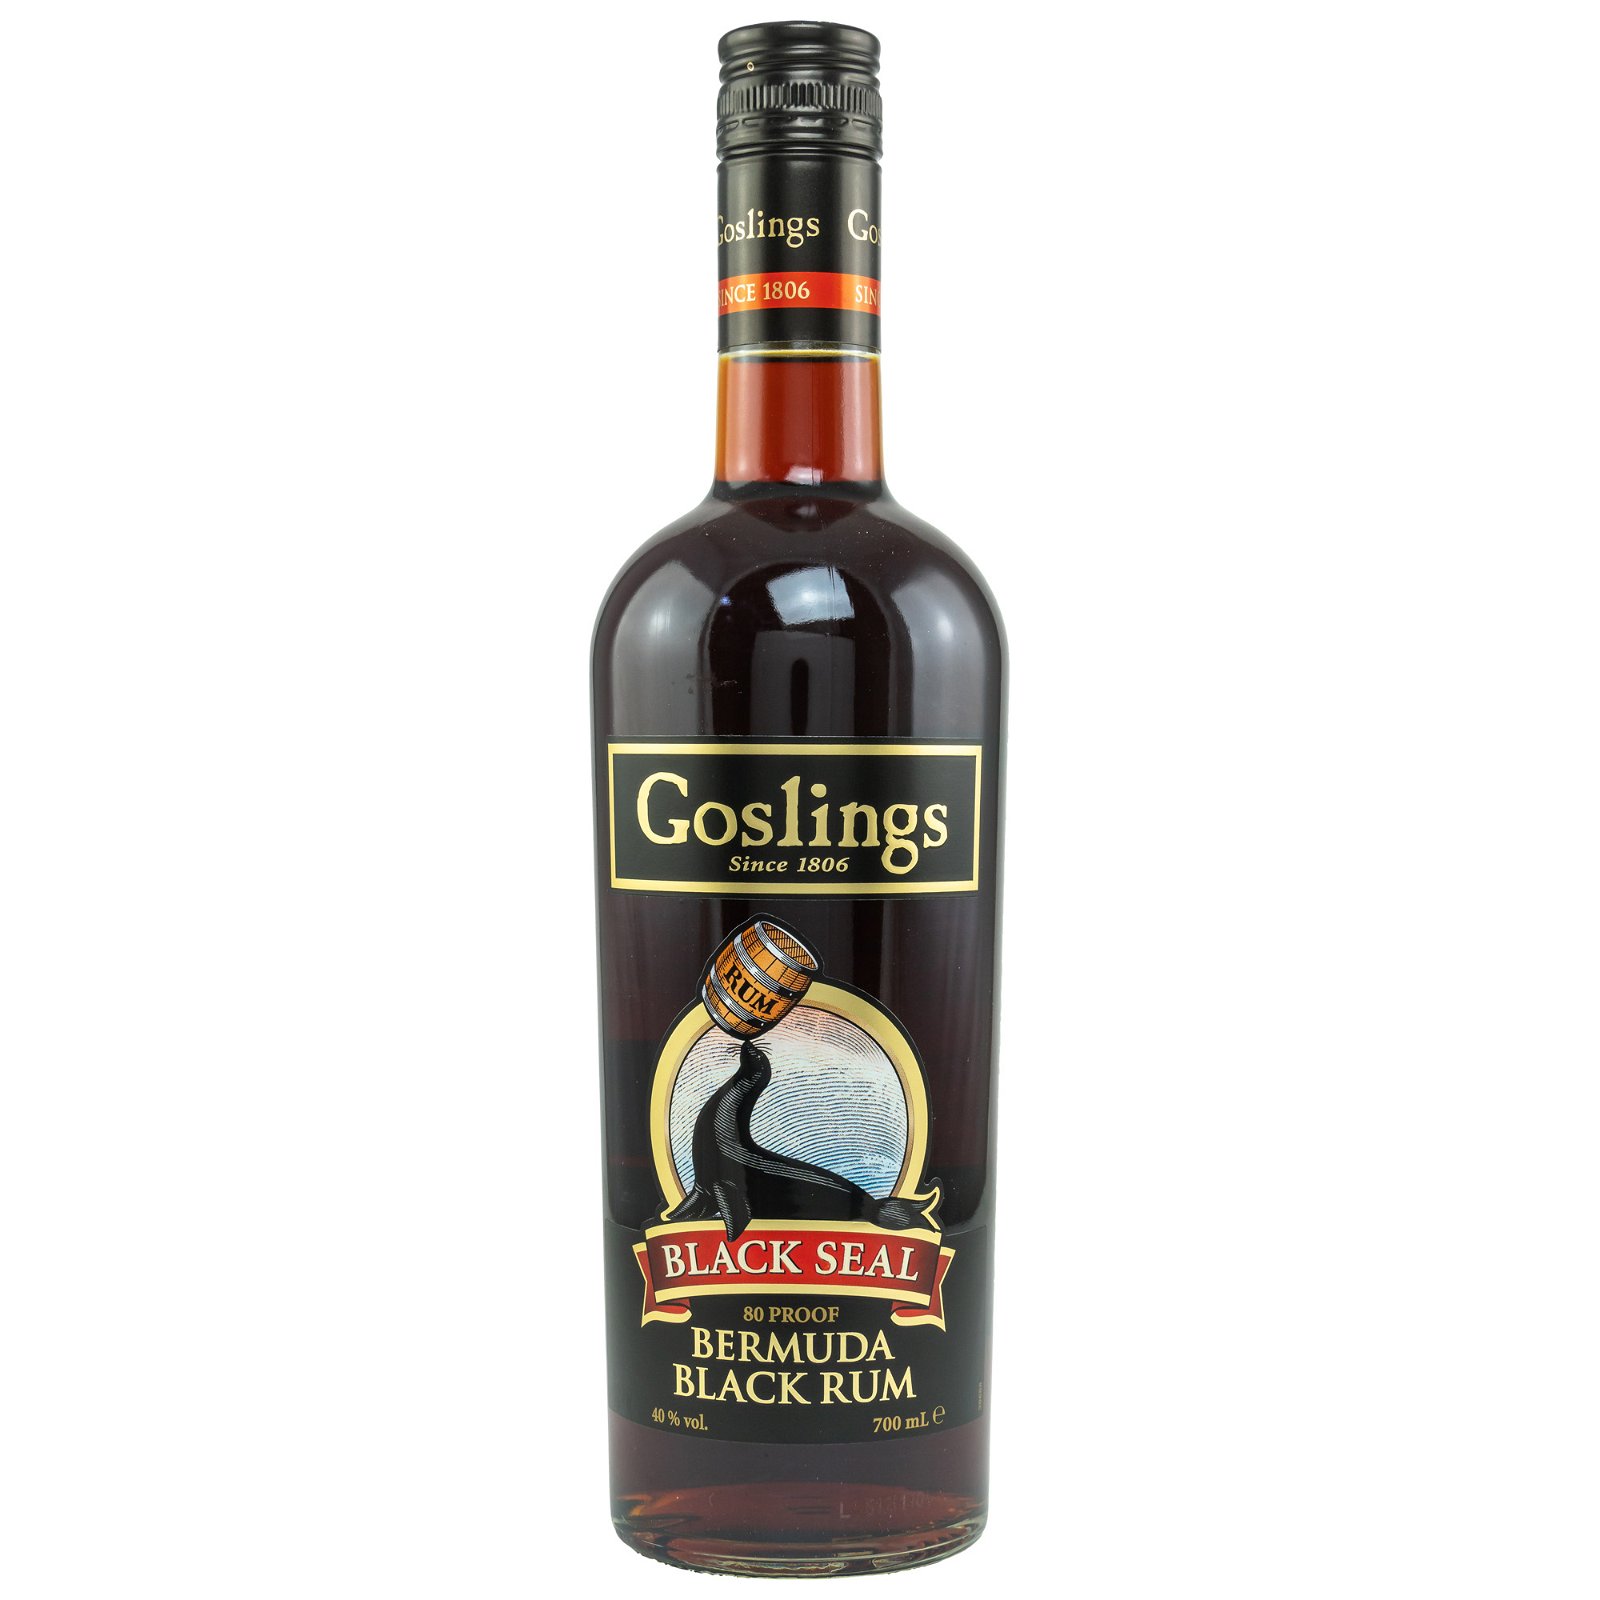 Goslings Black Seal 80 Proof Bermuda Black Rum